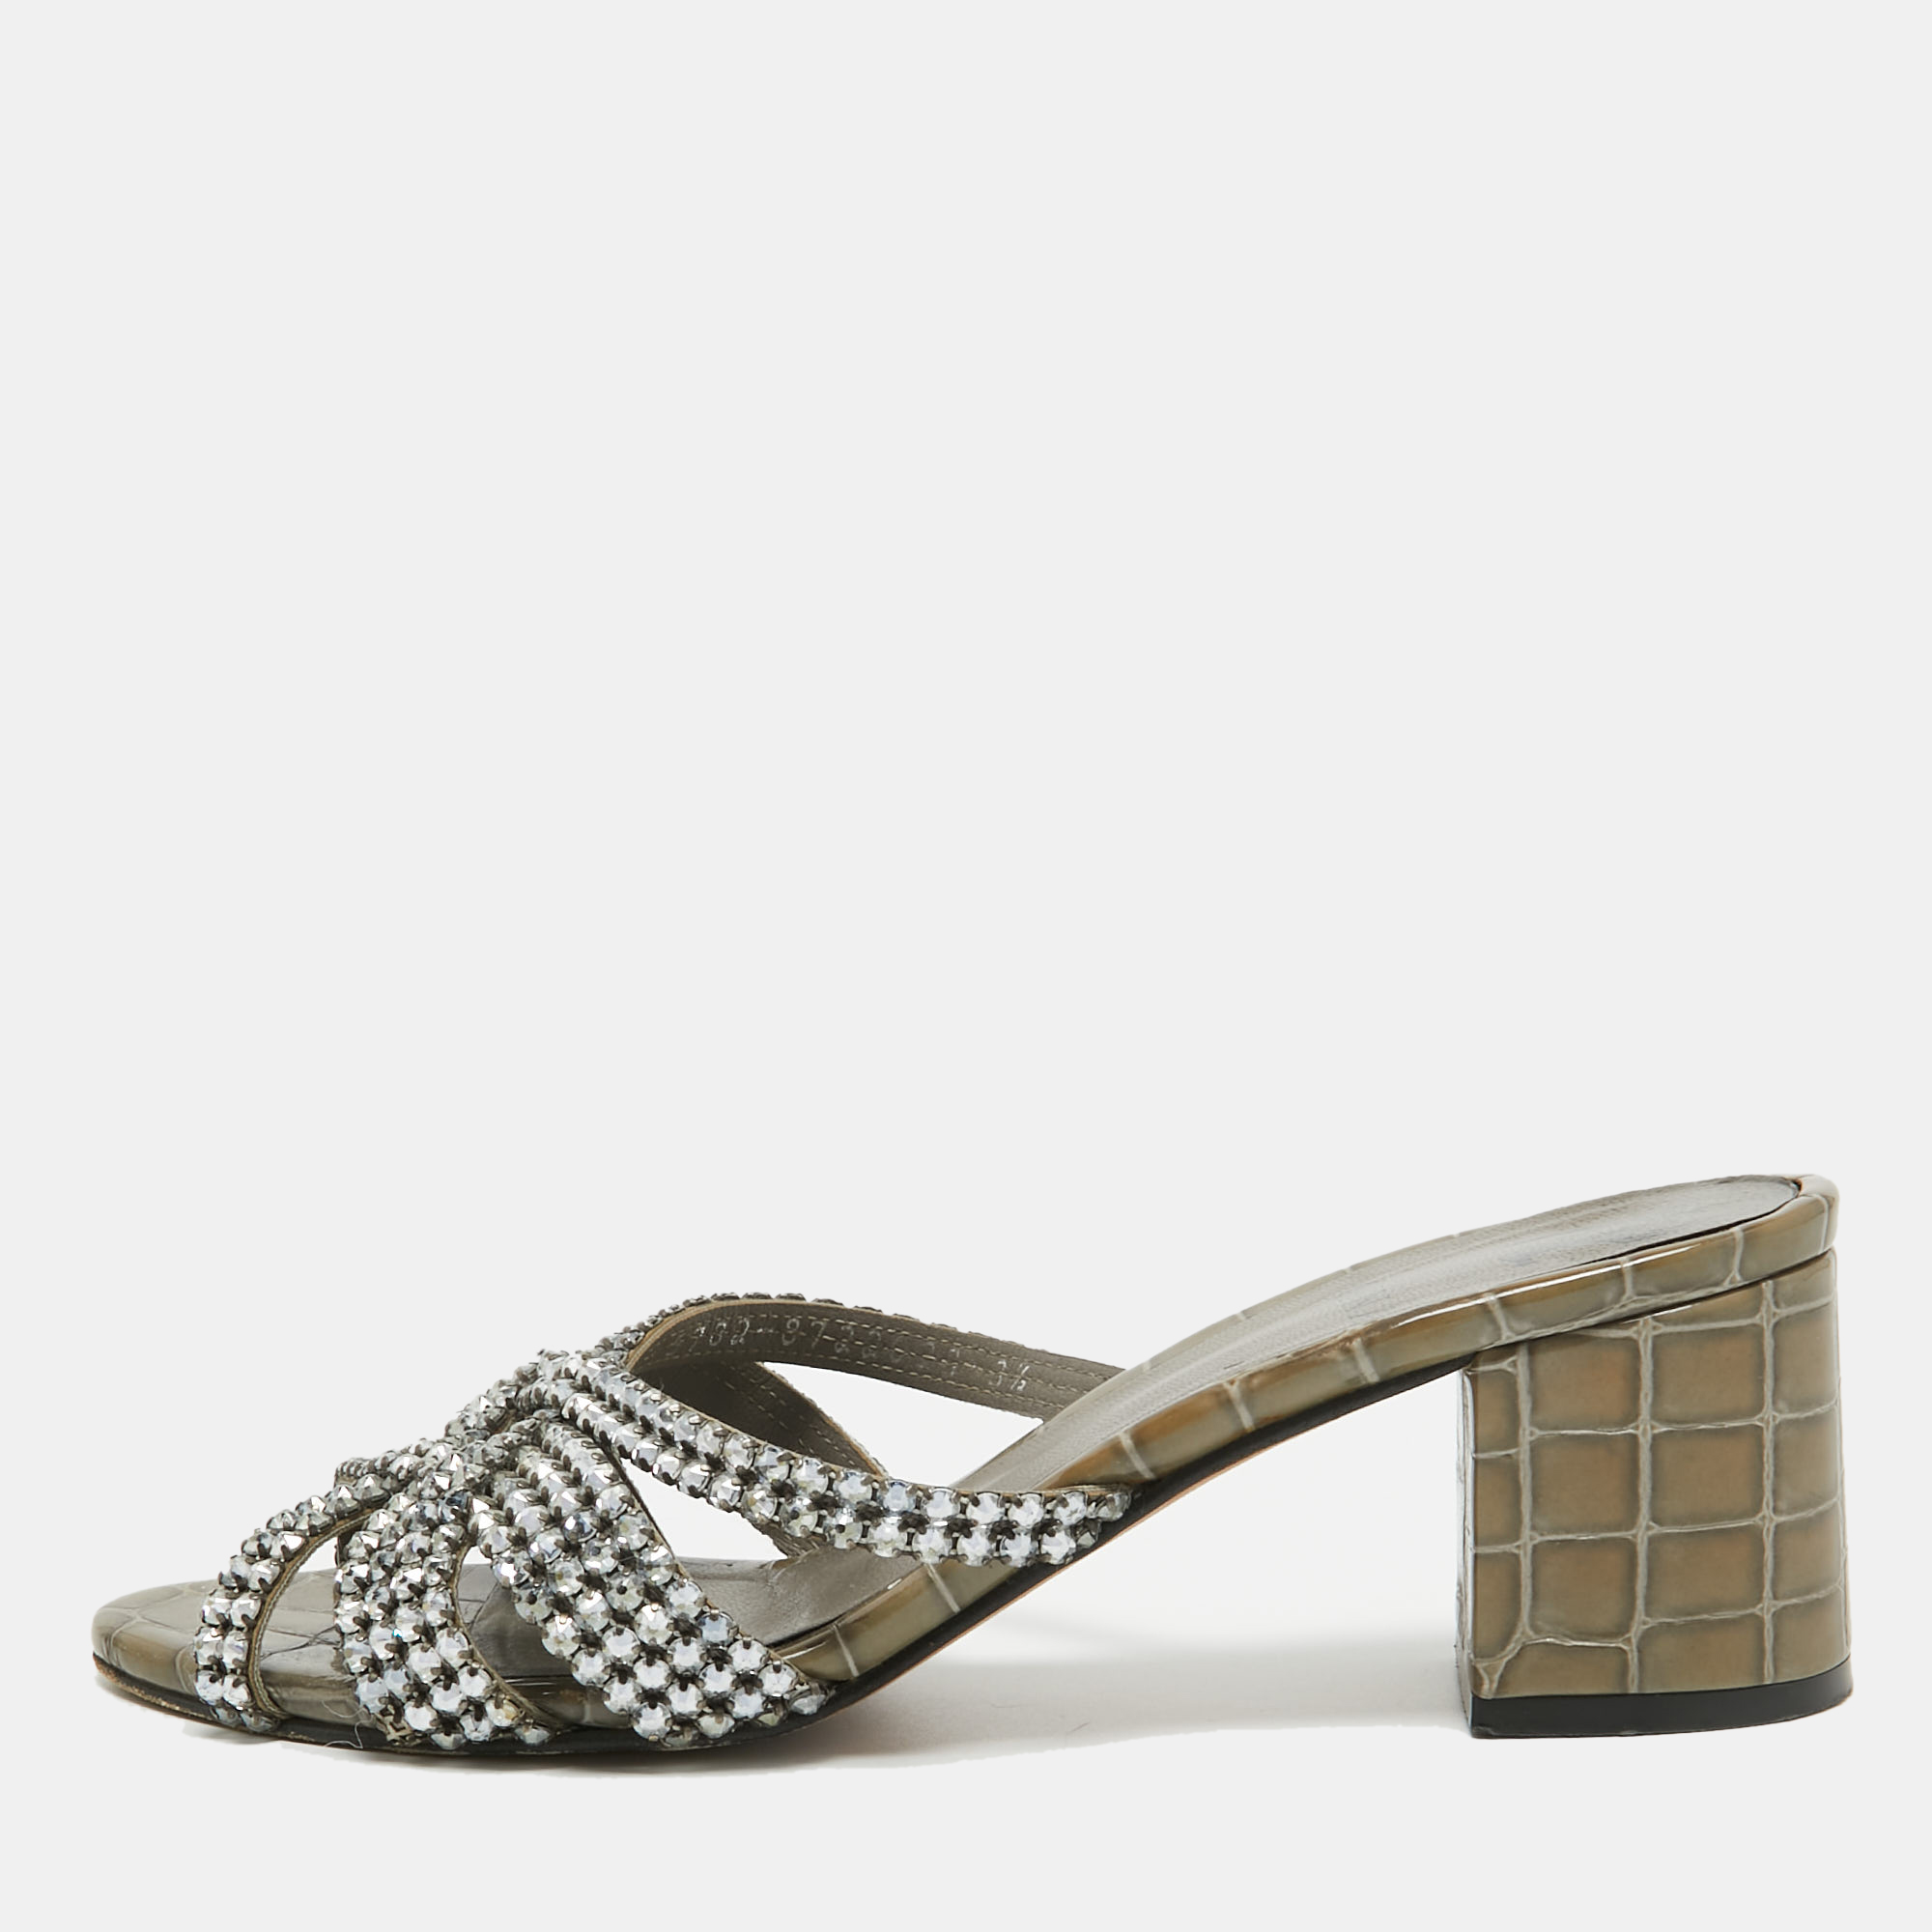 Gina Olive Green Crystal Embellished Leather Slide Sandals Size 36.5